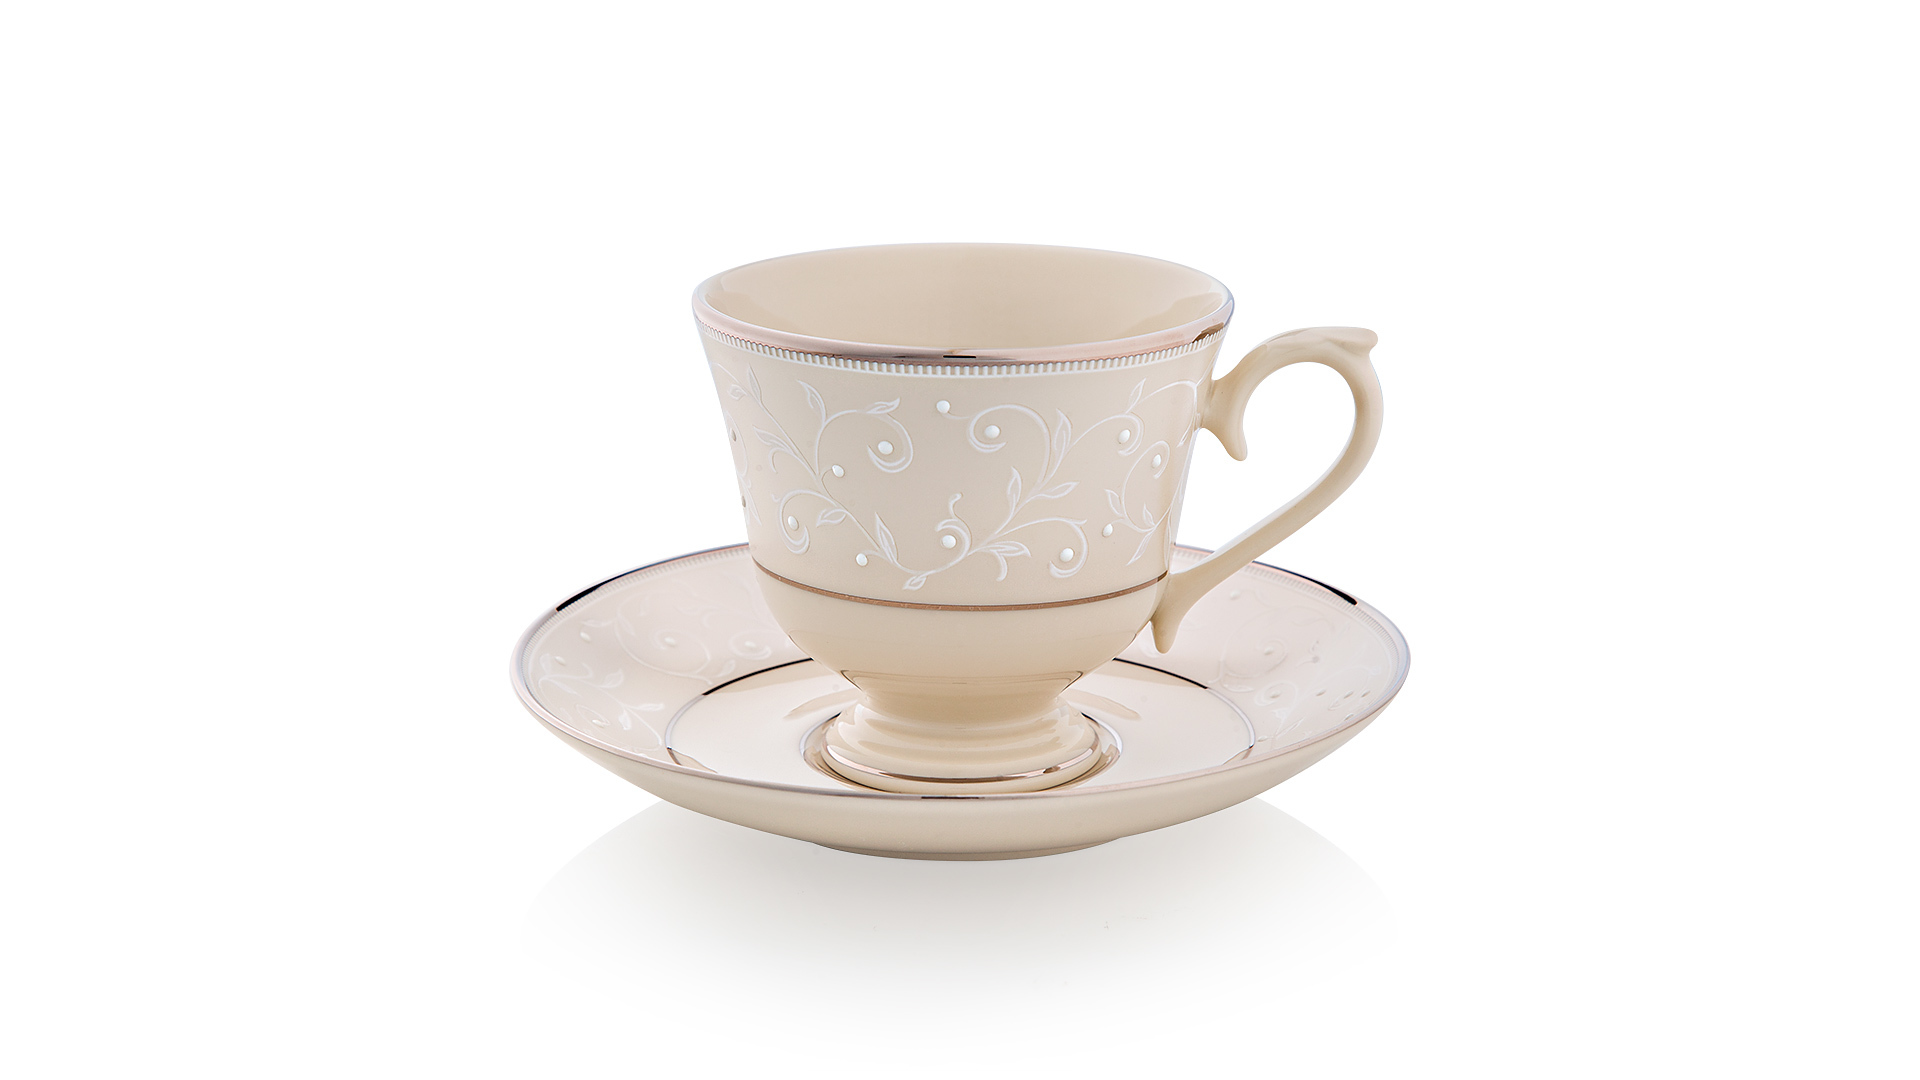 Чашка чайно-кофейная с блюдцем Lenox Чистый жемчуг 180 мл